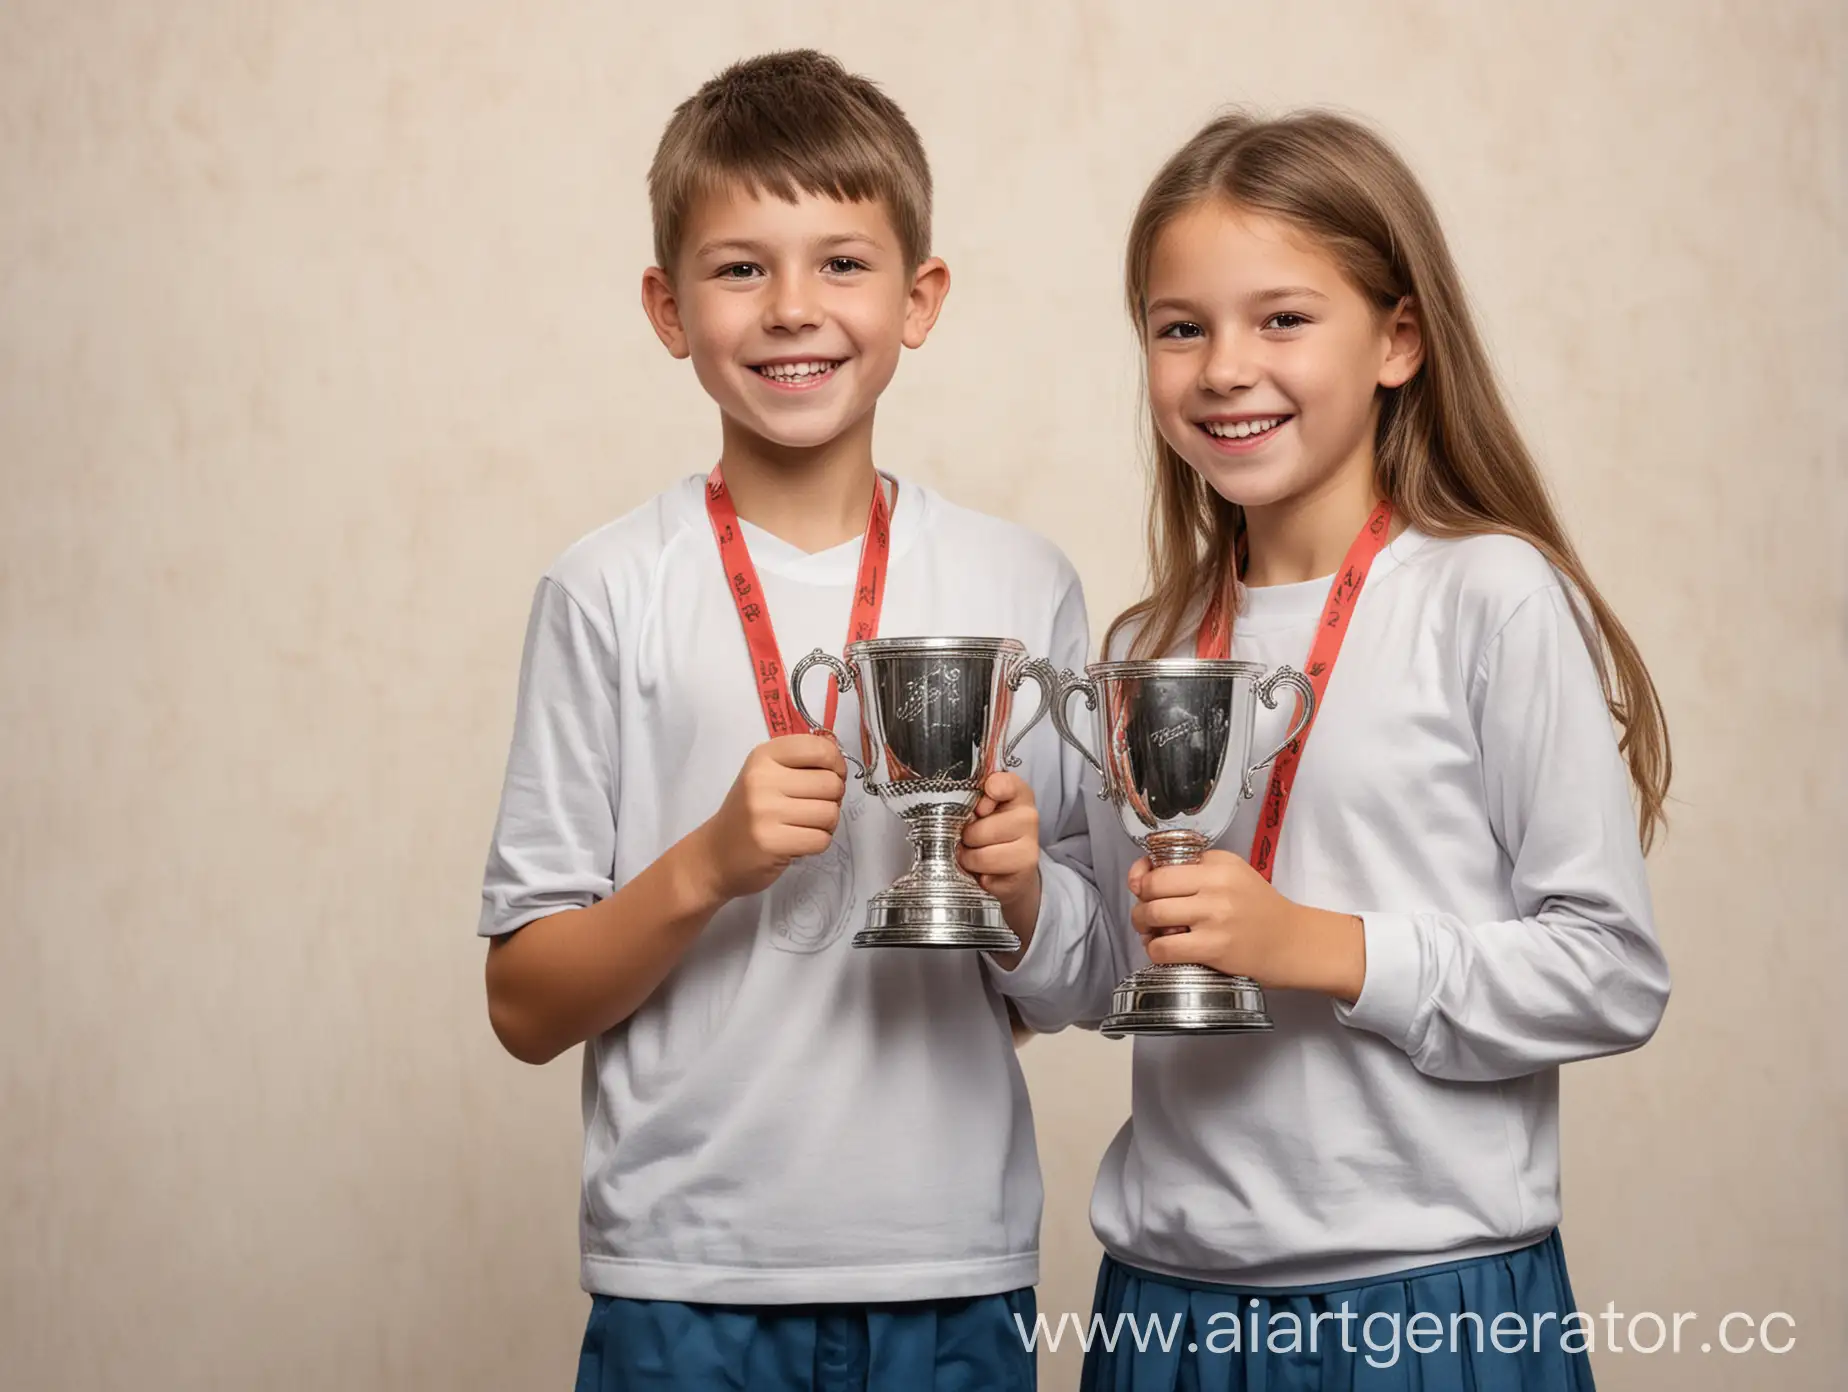 нарисуй мальчика и девочку 12 лет, которые выиграли кубок на соревнованиях и очень этому рады
